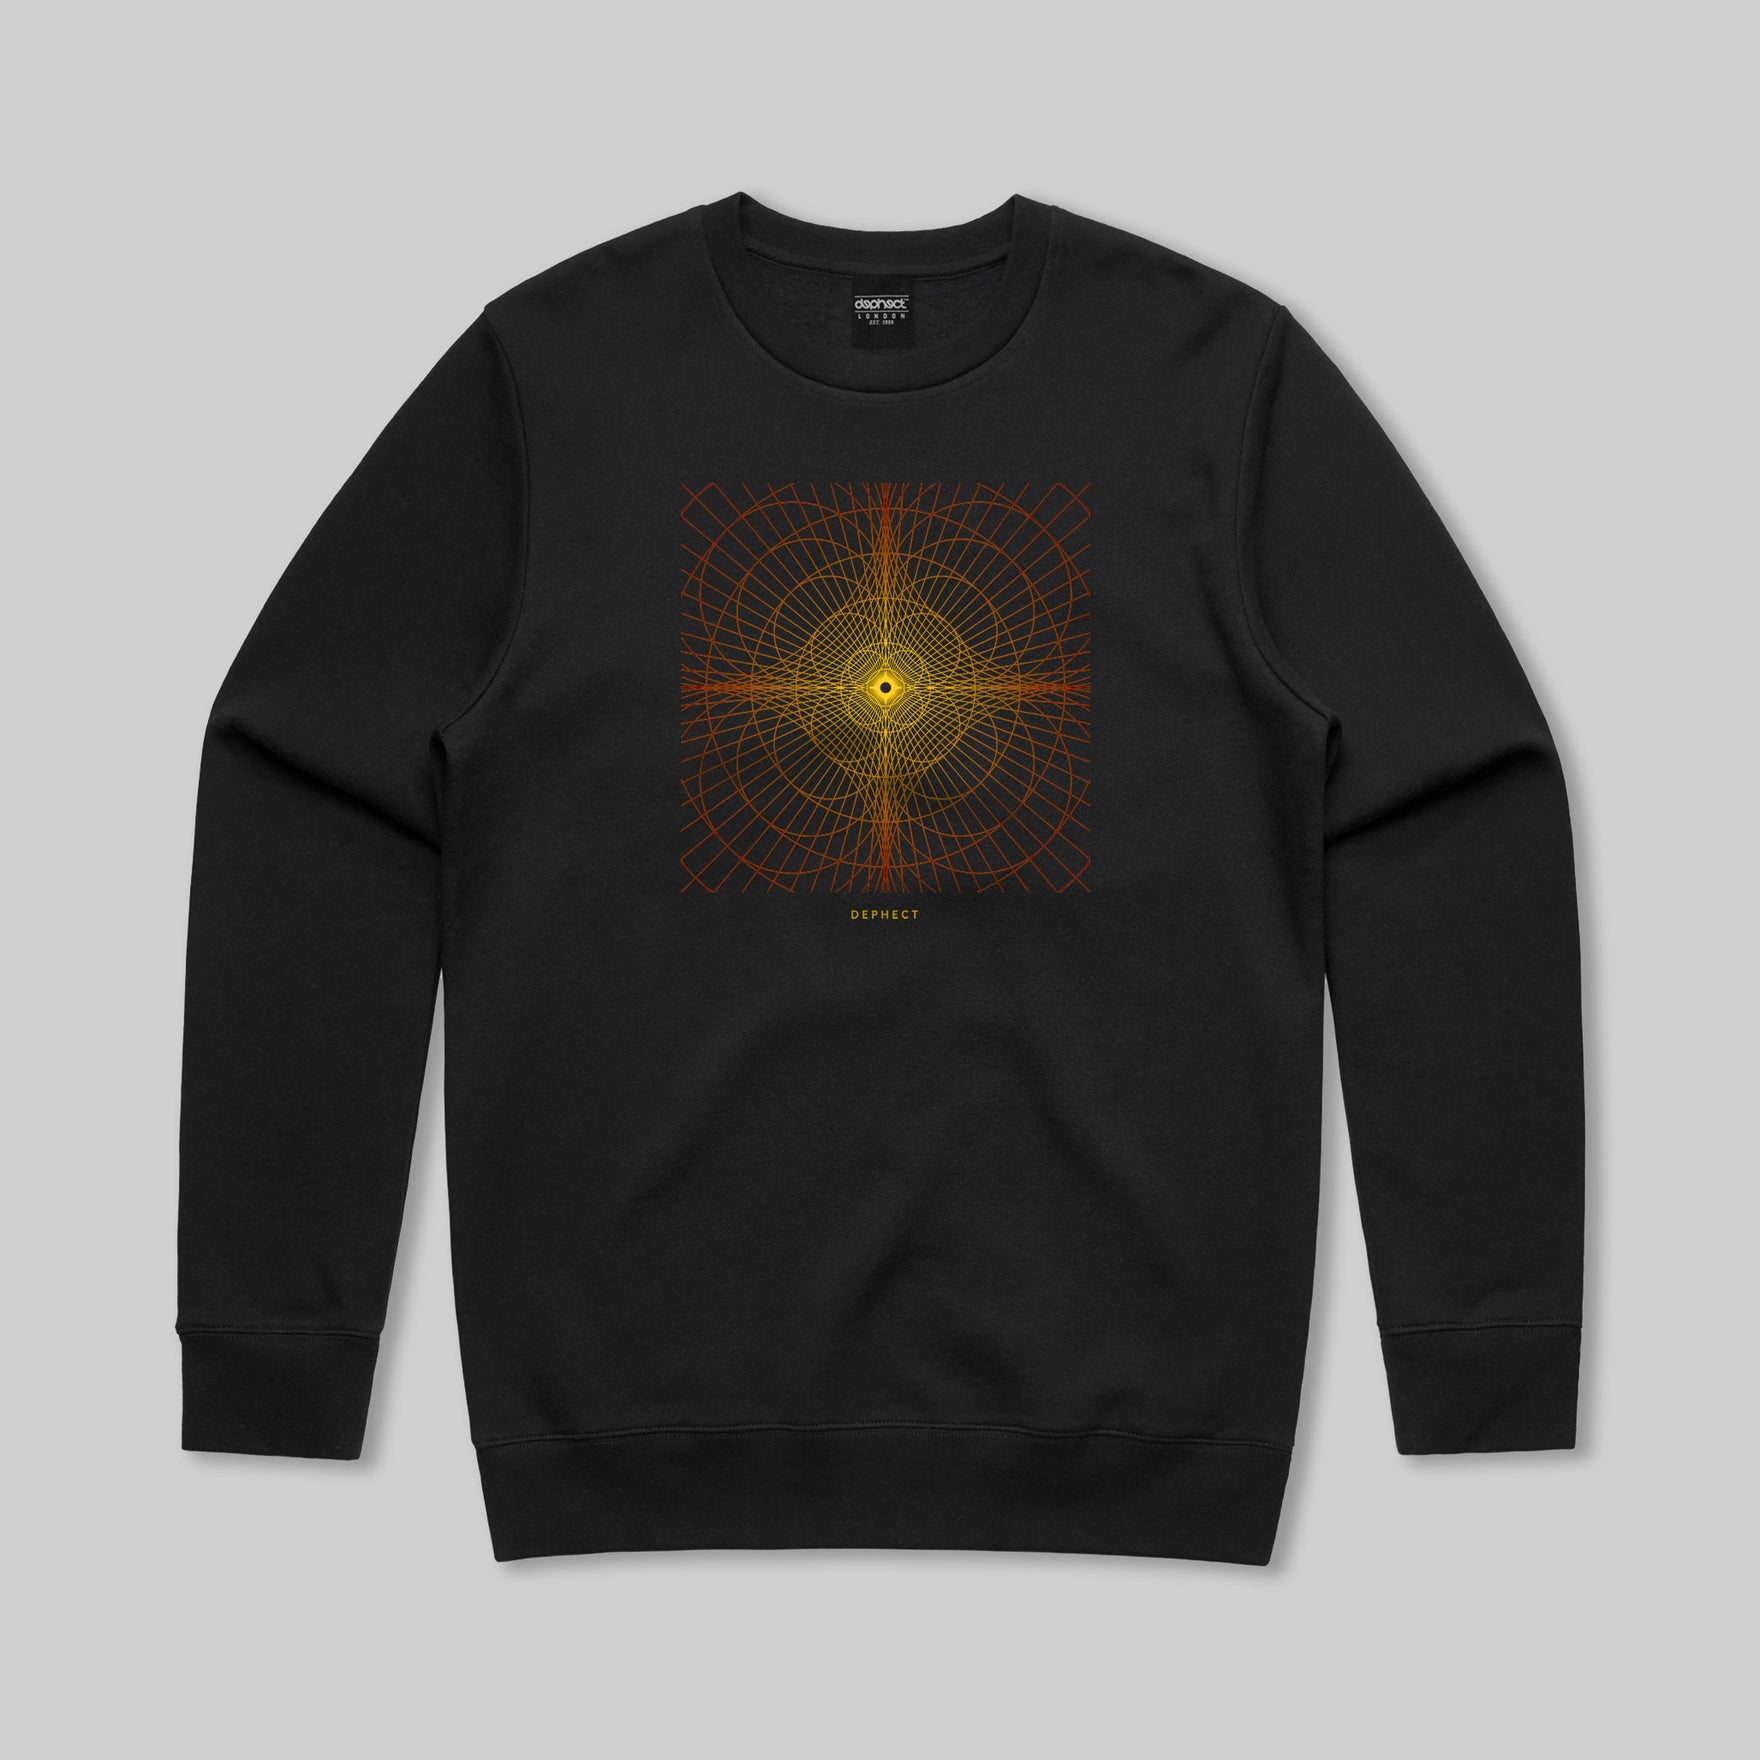 Infinity Sweatshirt / Black / by Robert Anderson